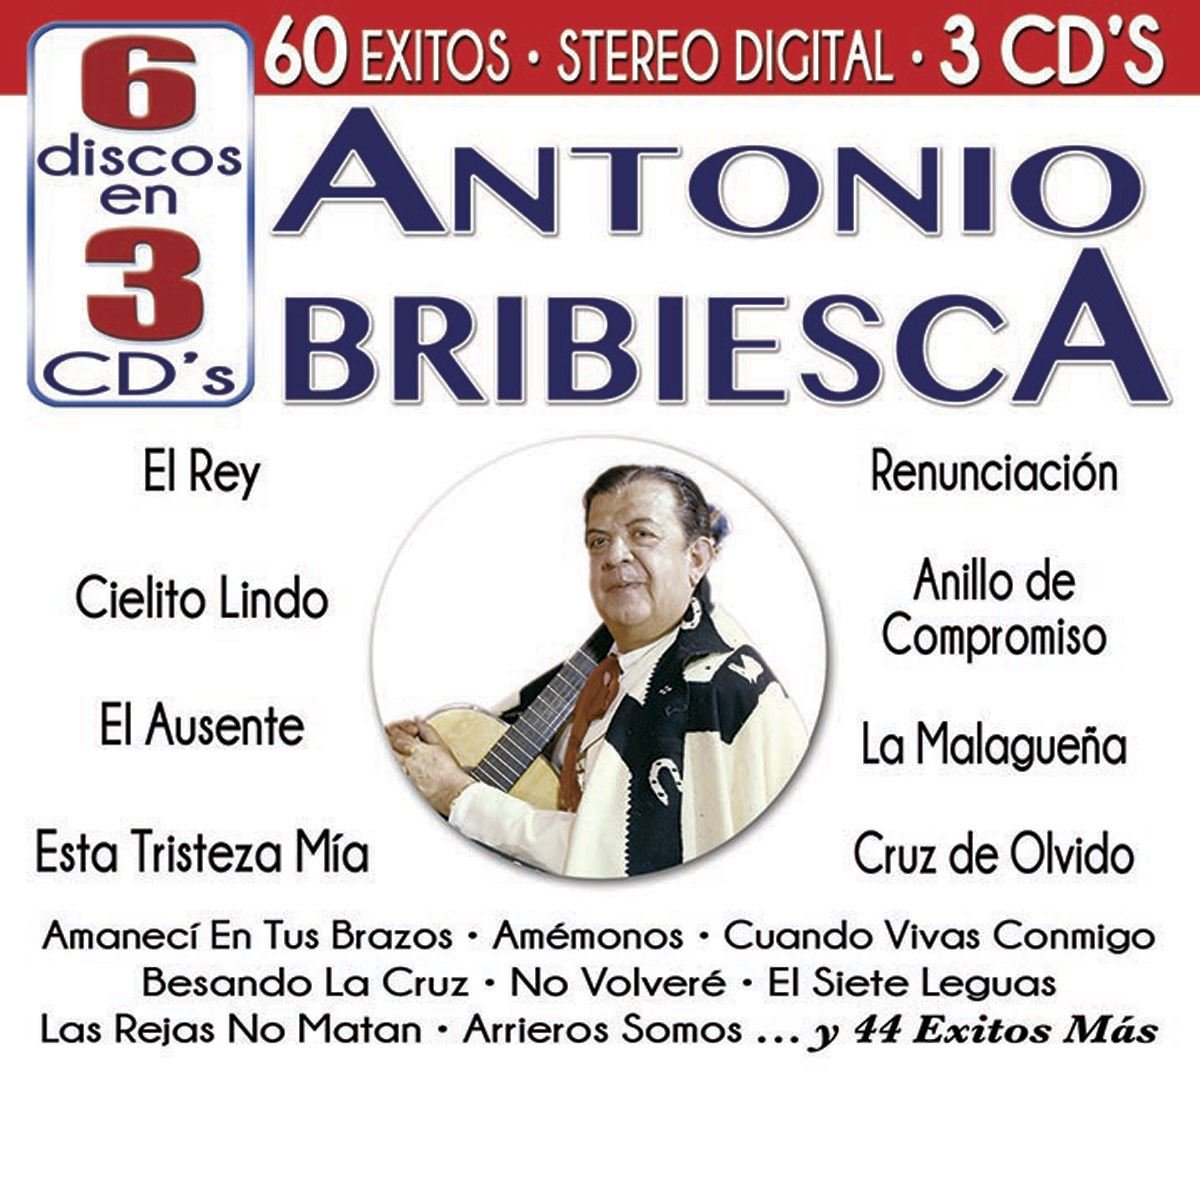 CD Antonio Bribiesca